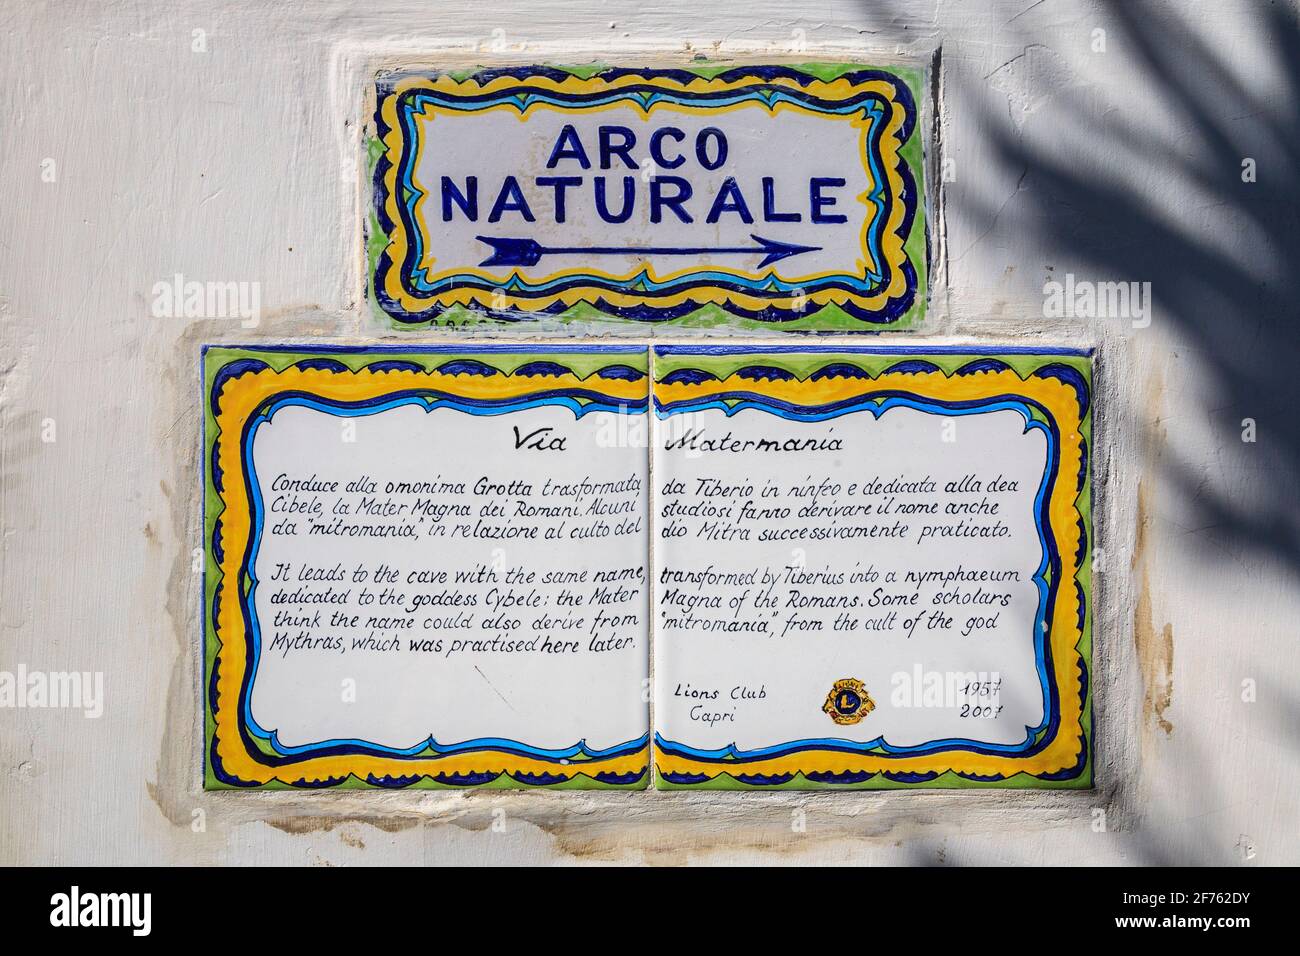 Keramische Wandfliesen auf der Via Maternania mit Wegbeschreibungen und Informationen über den „Arco Naturale“ auf der Insel Capri, Italien Stockfoto